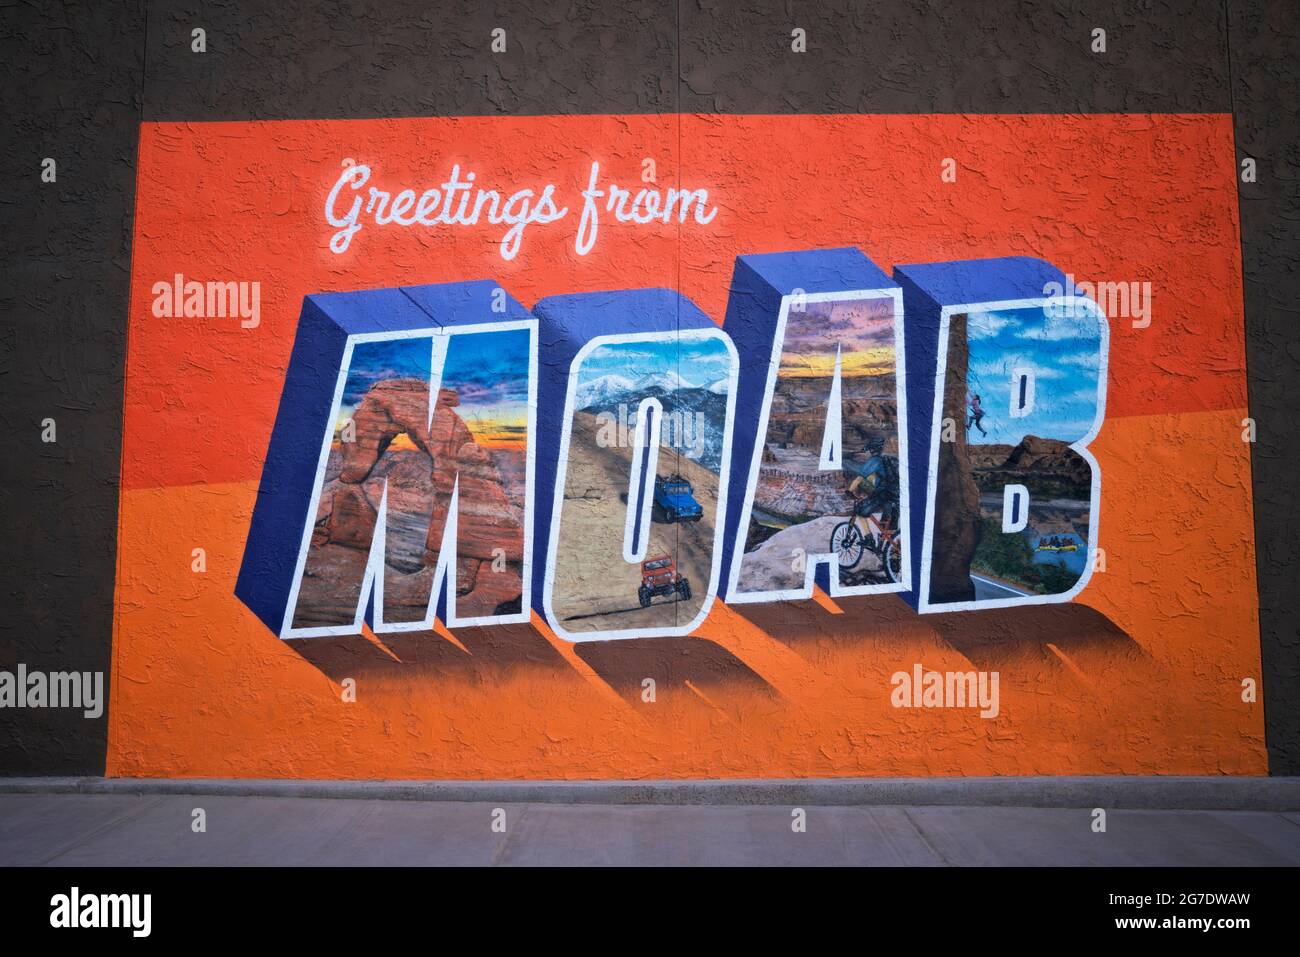 Un mural de gran tamaño en Moab muestra algunas de las muchas actividades al aire libre que atraen a visitantes de todo el mundo a esta zona de Utah. Foto de stock